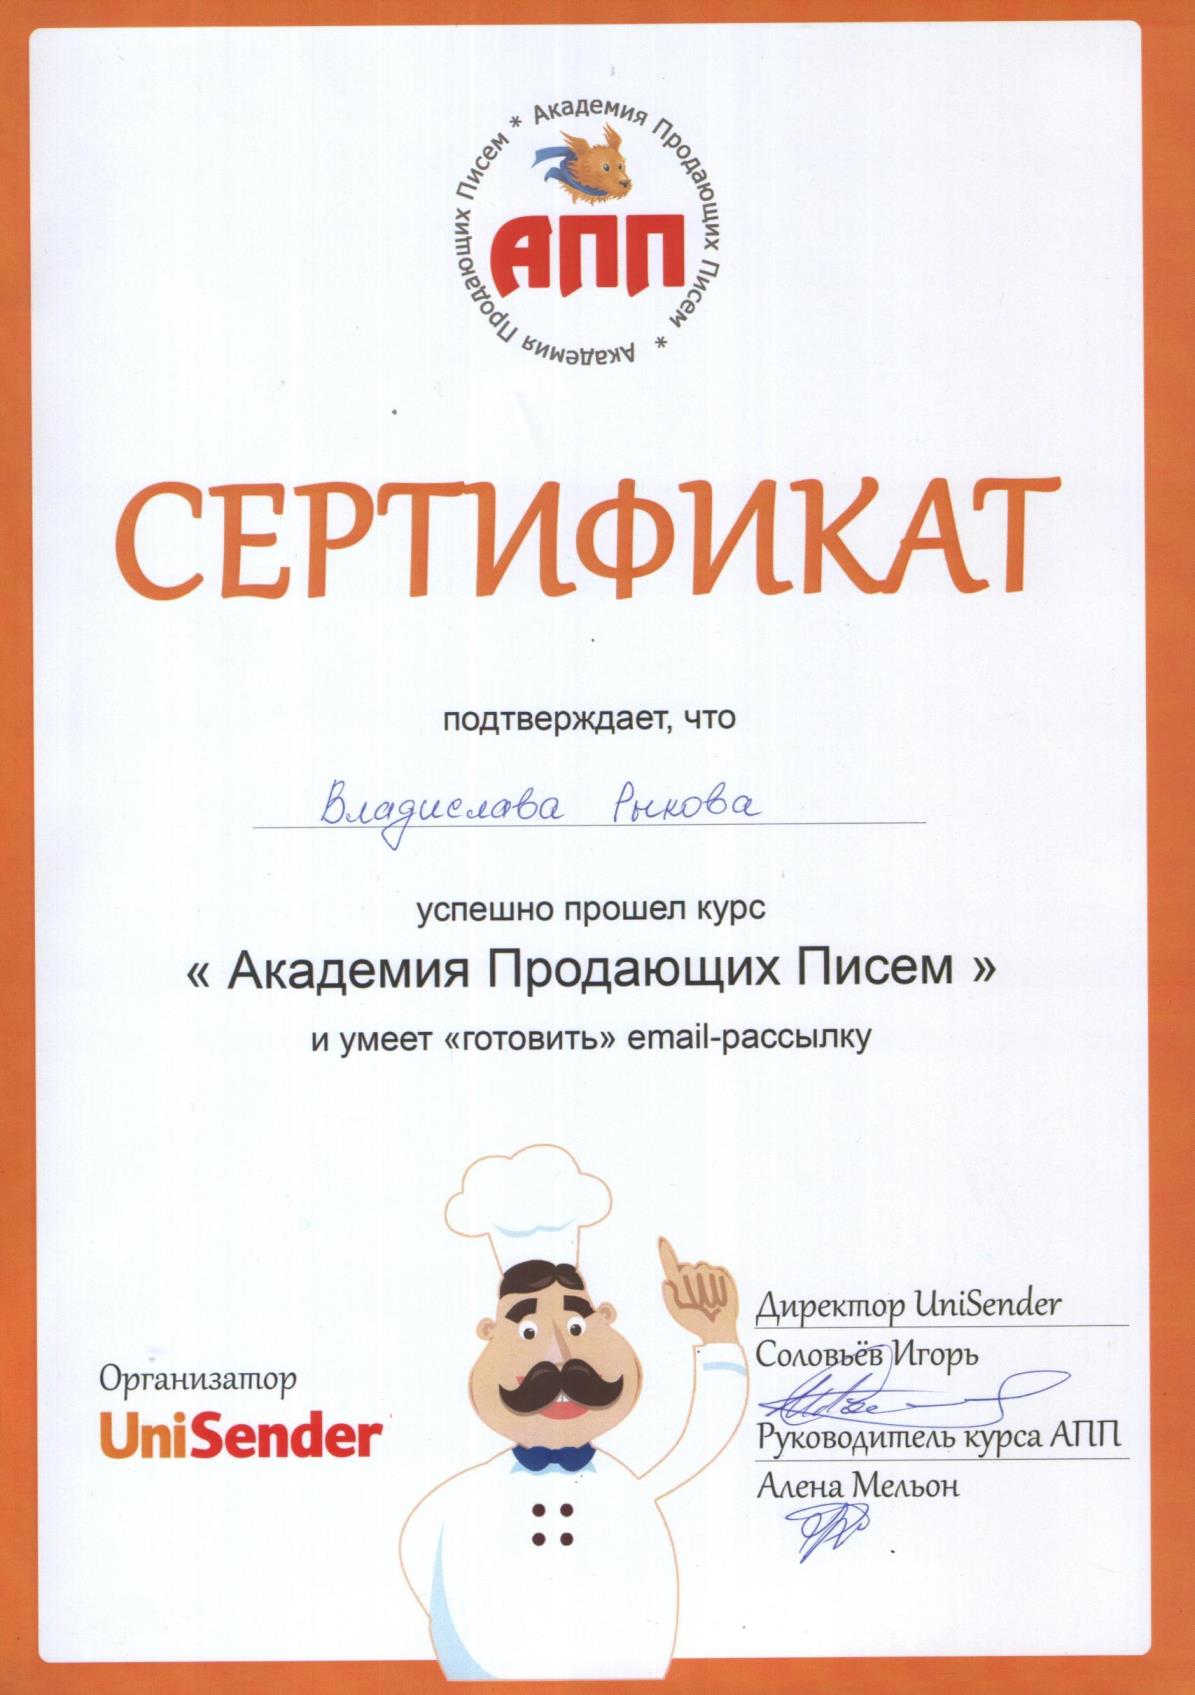 Сертификат о прохождении курса по e-mail маркетингу